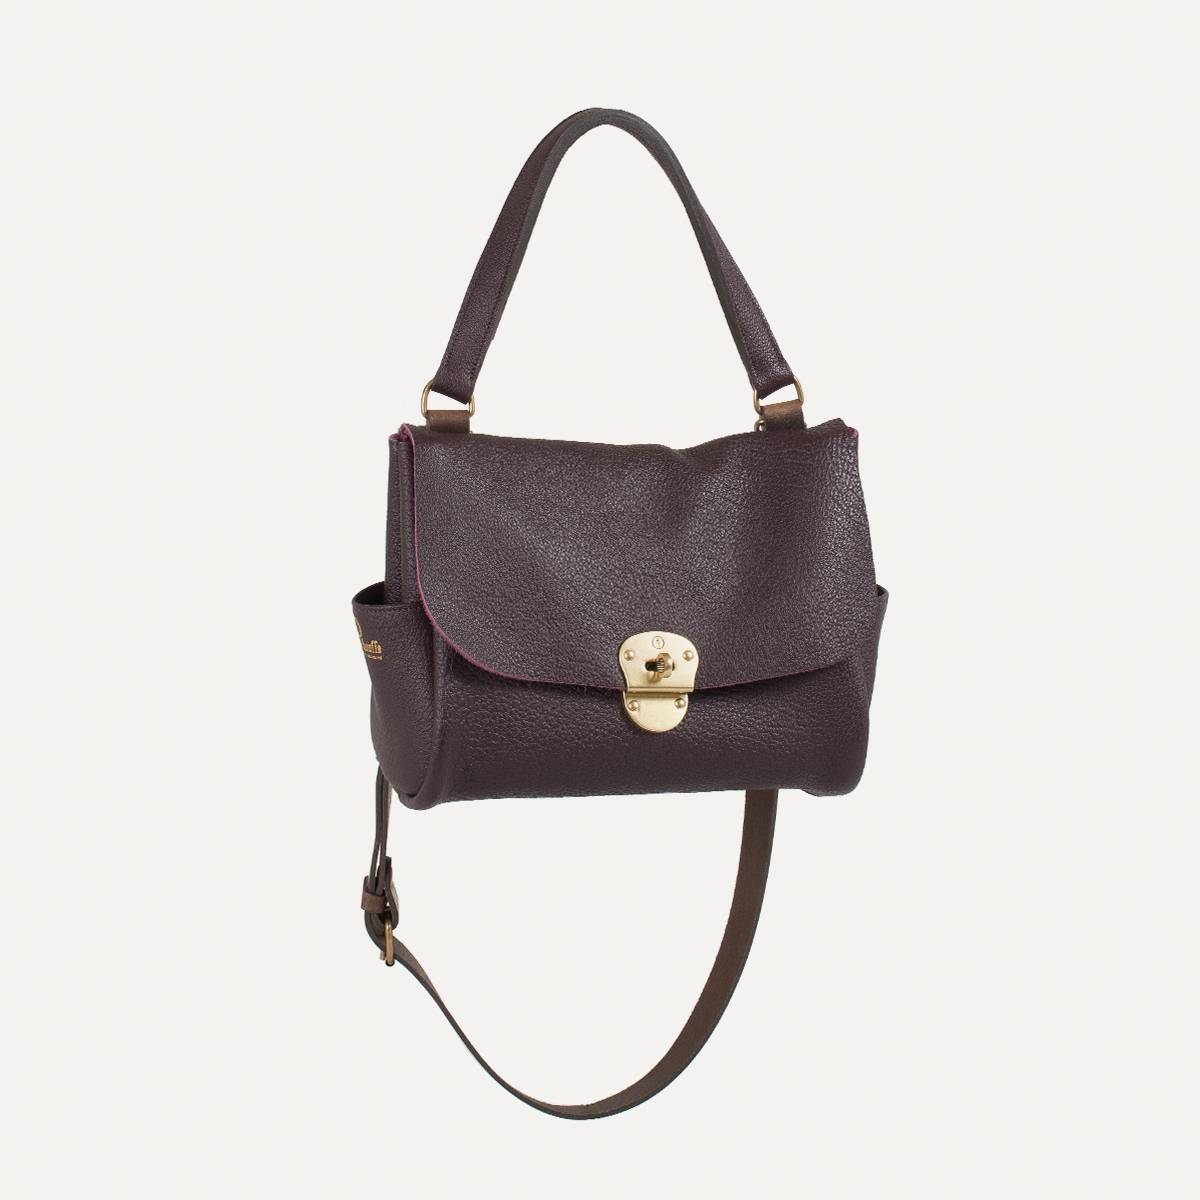 June handbag for women - Soft leather